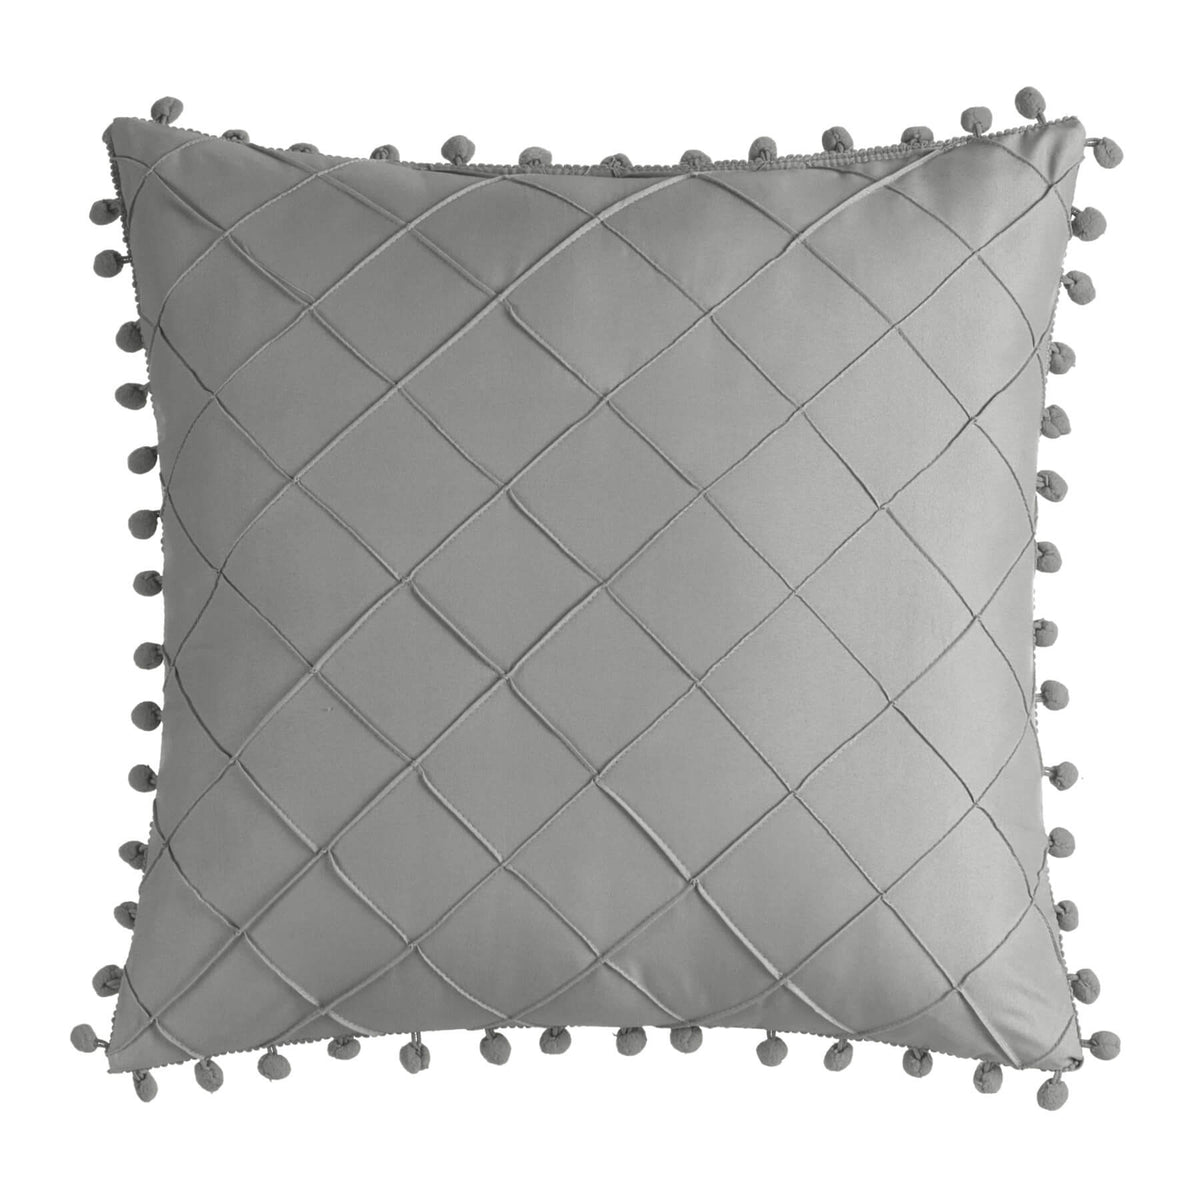 Chic Home Leona 5 Piece Pleated Seersucker Comforter Set-